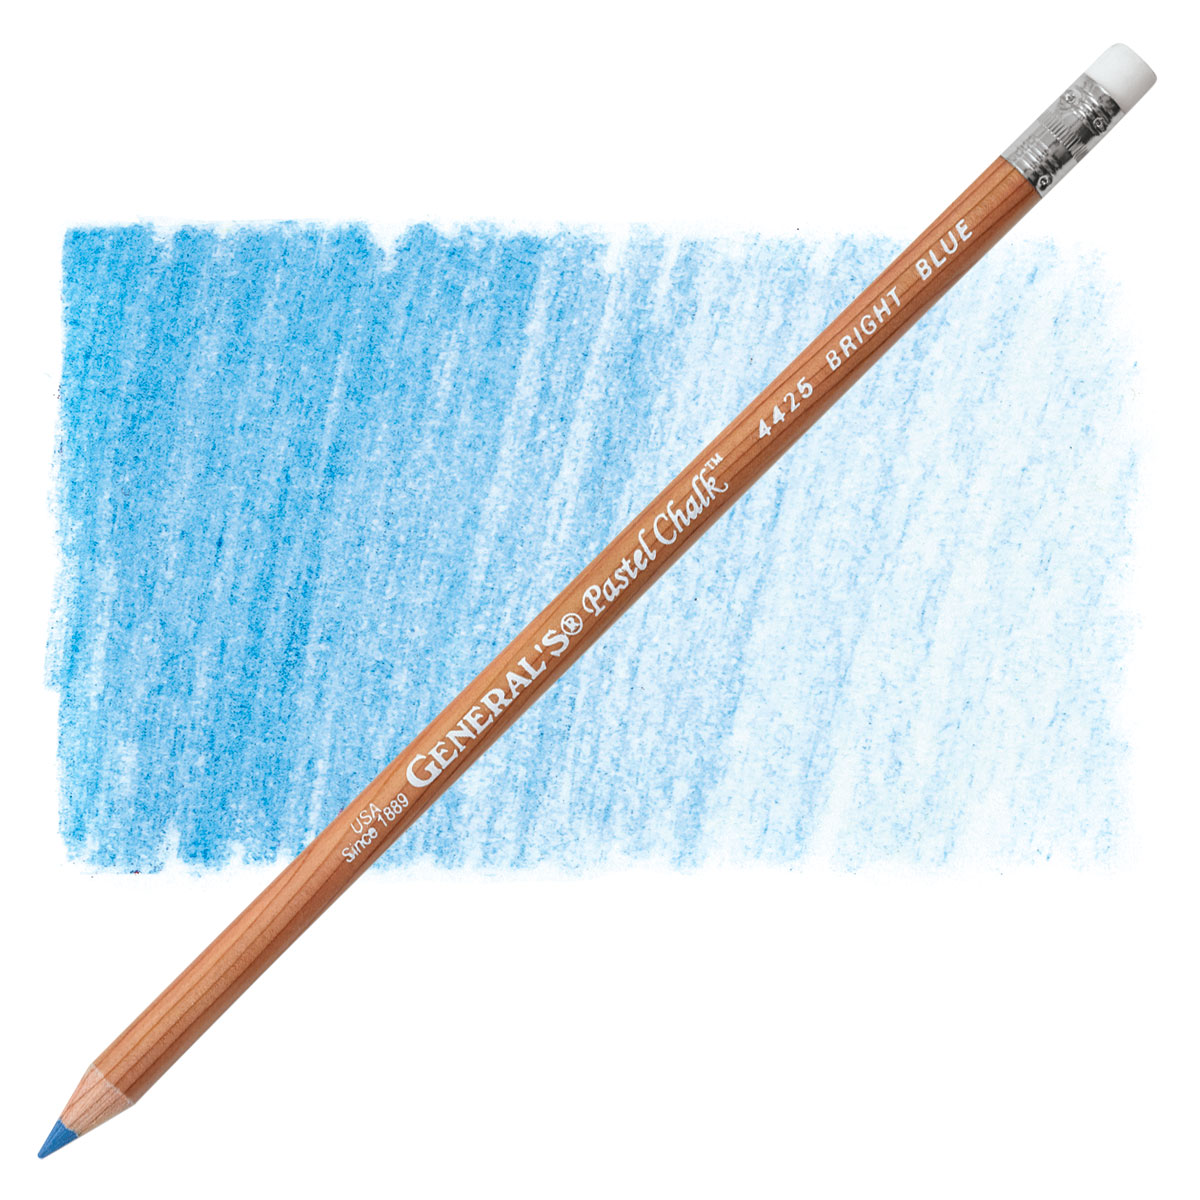 General's Pastel Chalk Pencils 4/Pkg Warm